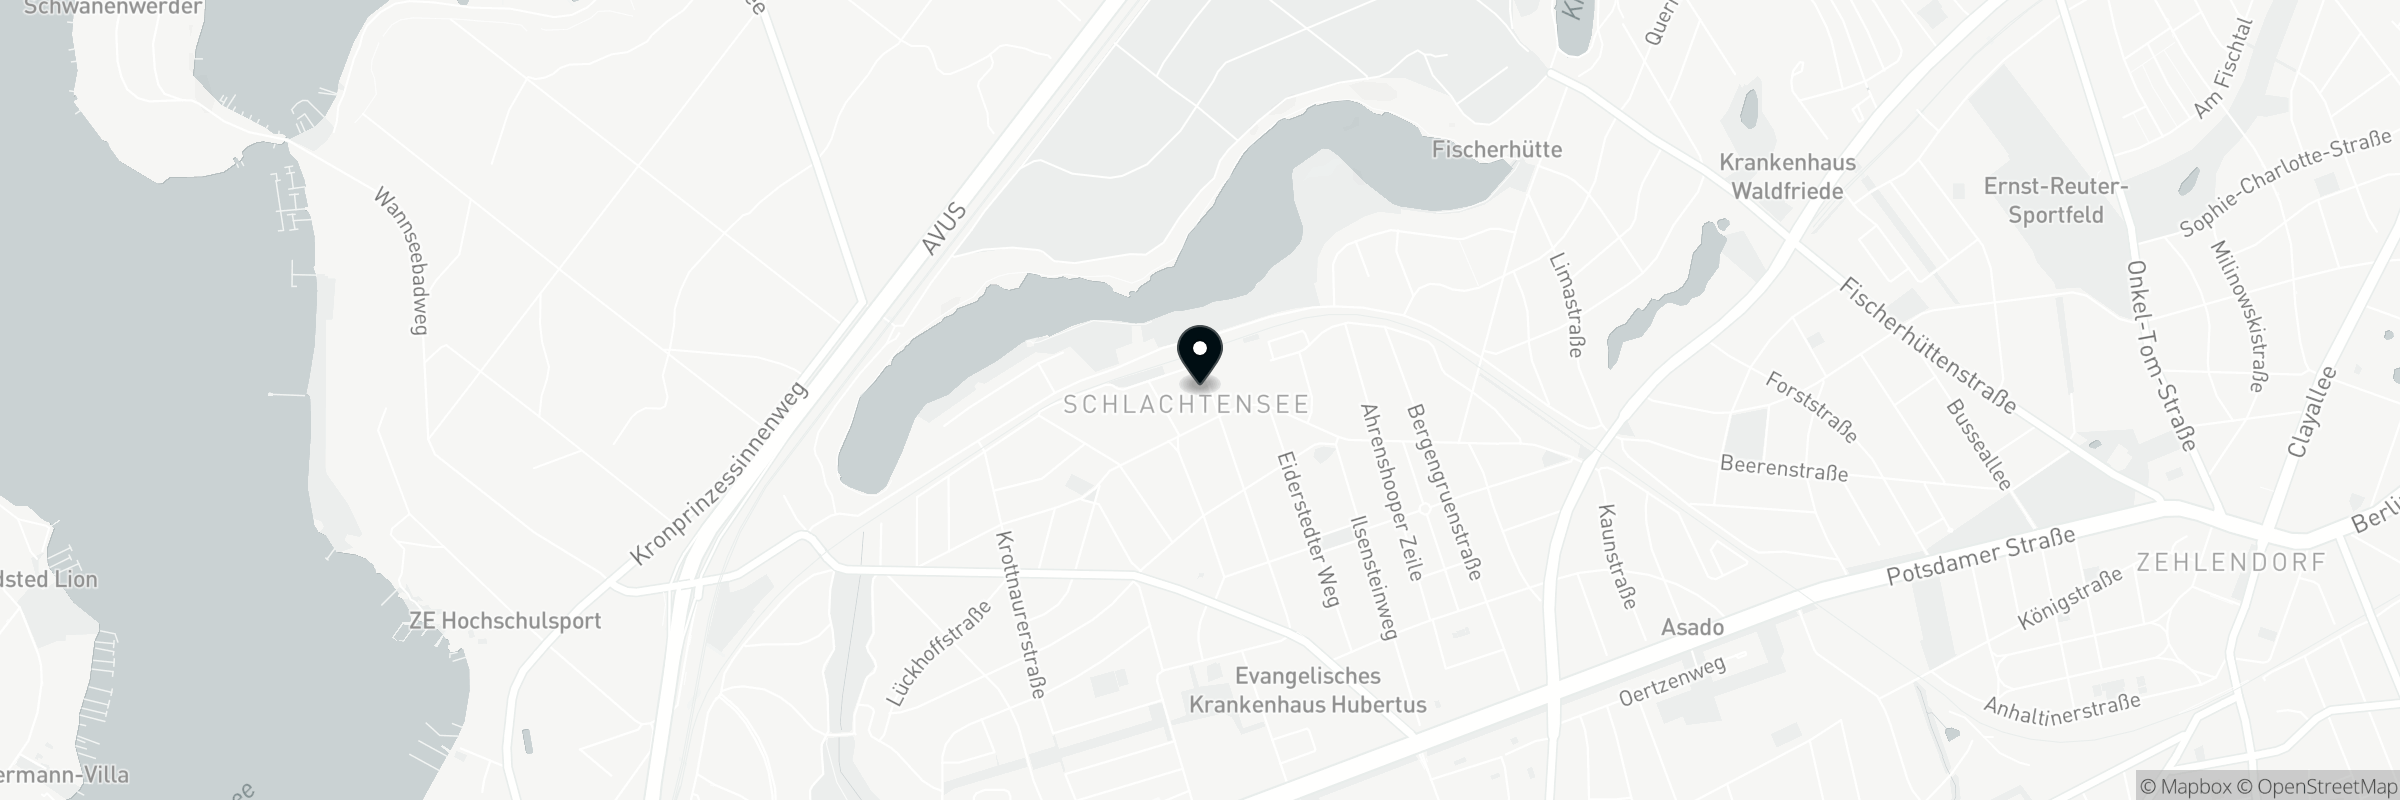 Die Karte zeigt die Adresse von Enoteca Paradiso